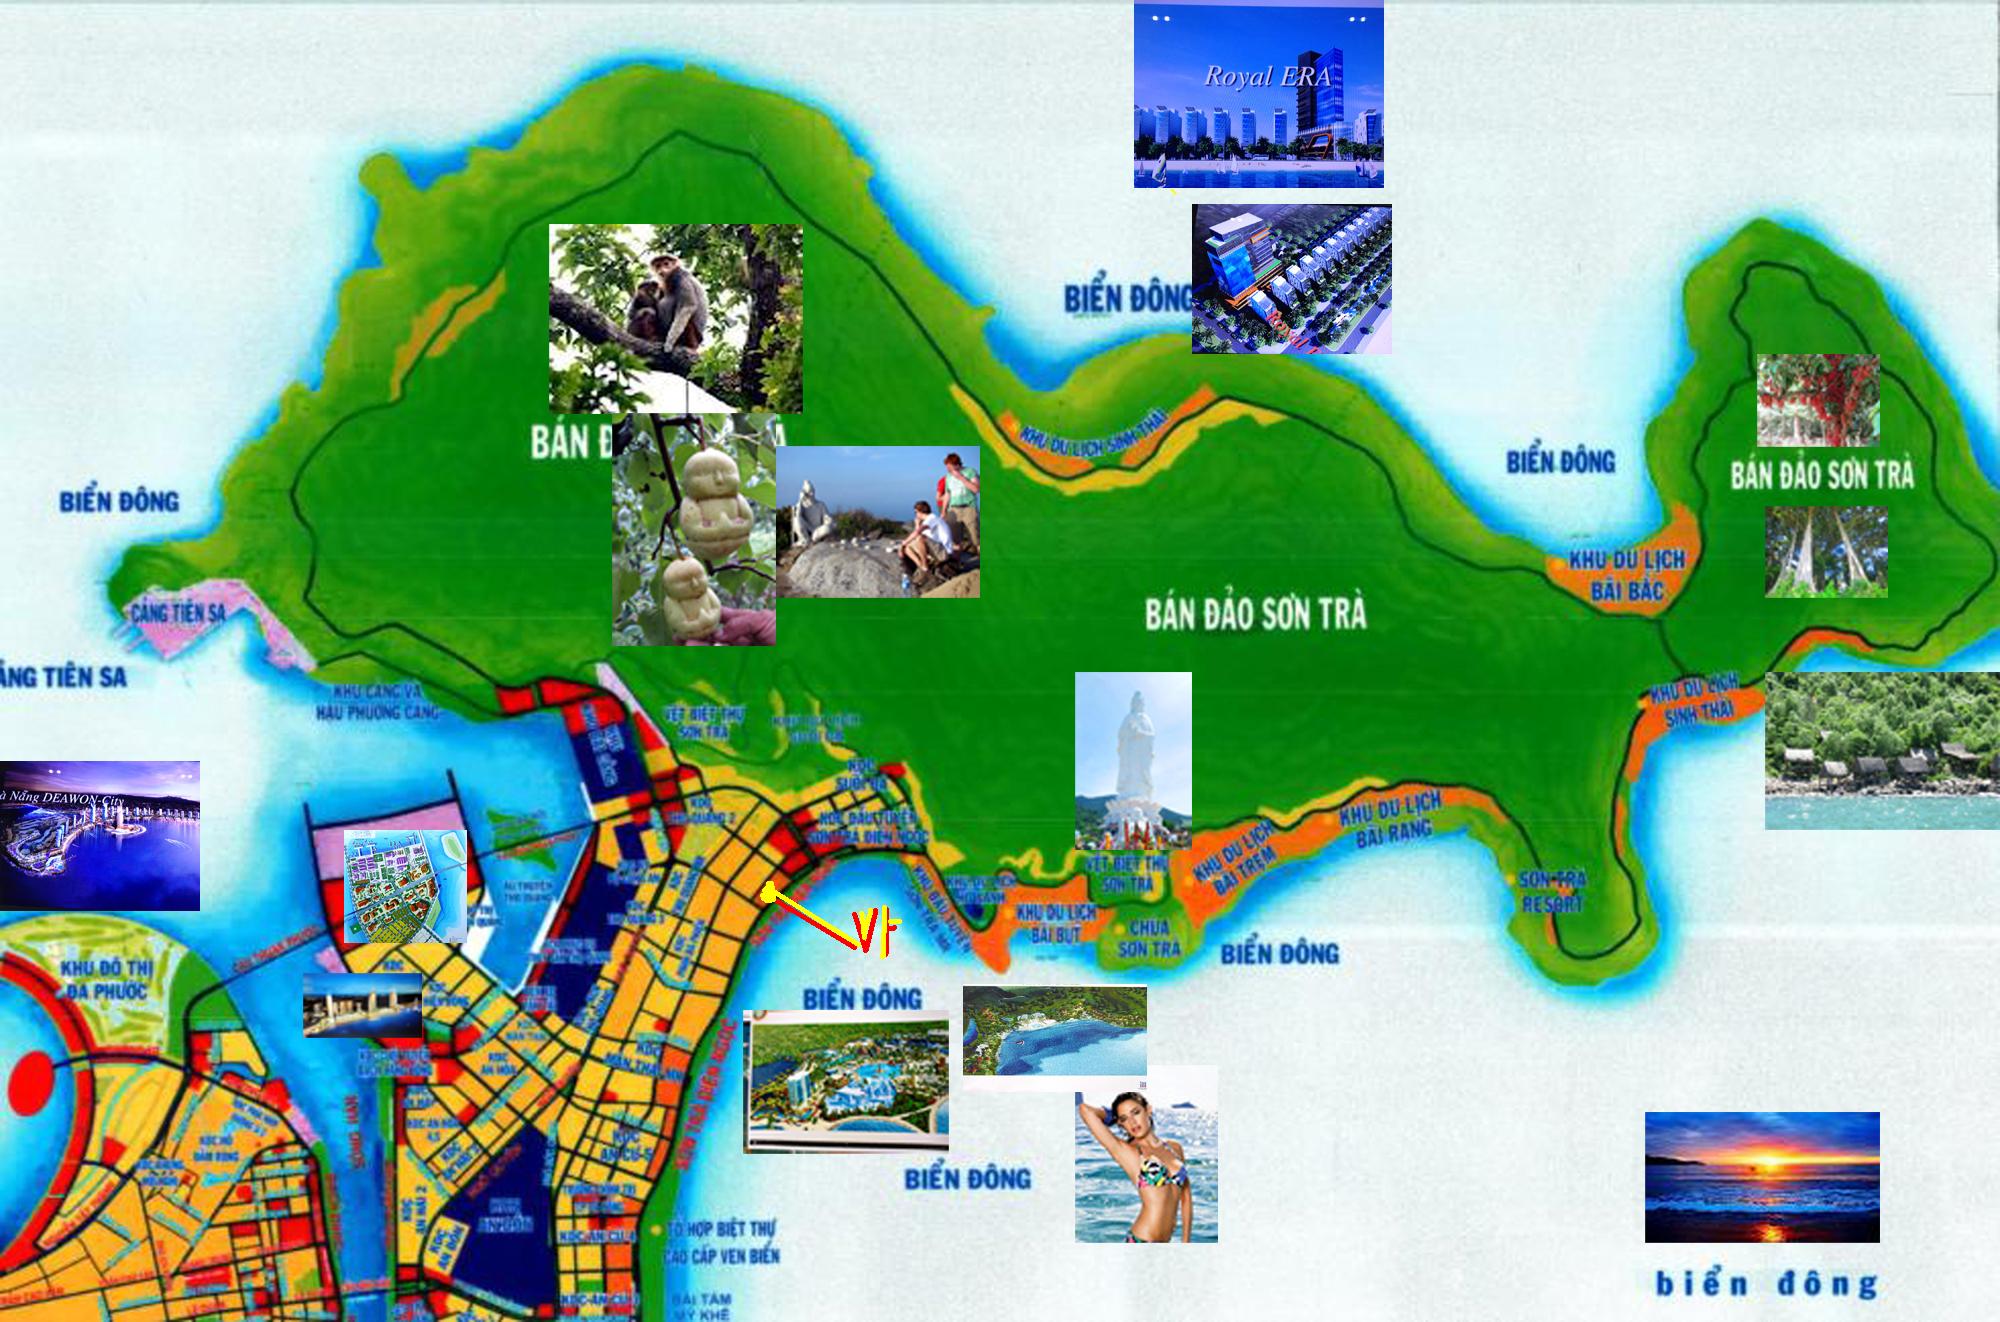 Quy hoạch Sơn Trà Đà Nẵng: Năm 2024, Bán đảo Sơn Trà Đà Nẵng sẽ được quy hoạch như một khu vực phát triển du lịch bền vững. Quy hoạch này sẽ không chỉ giữ gìn vẻ đẹp tự nhiên mà còn tạo ra nhiều cơ hội cho địa phương phát triển kinh tế bền vững.